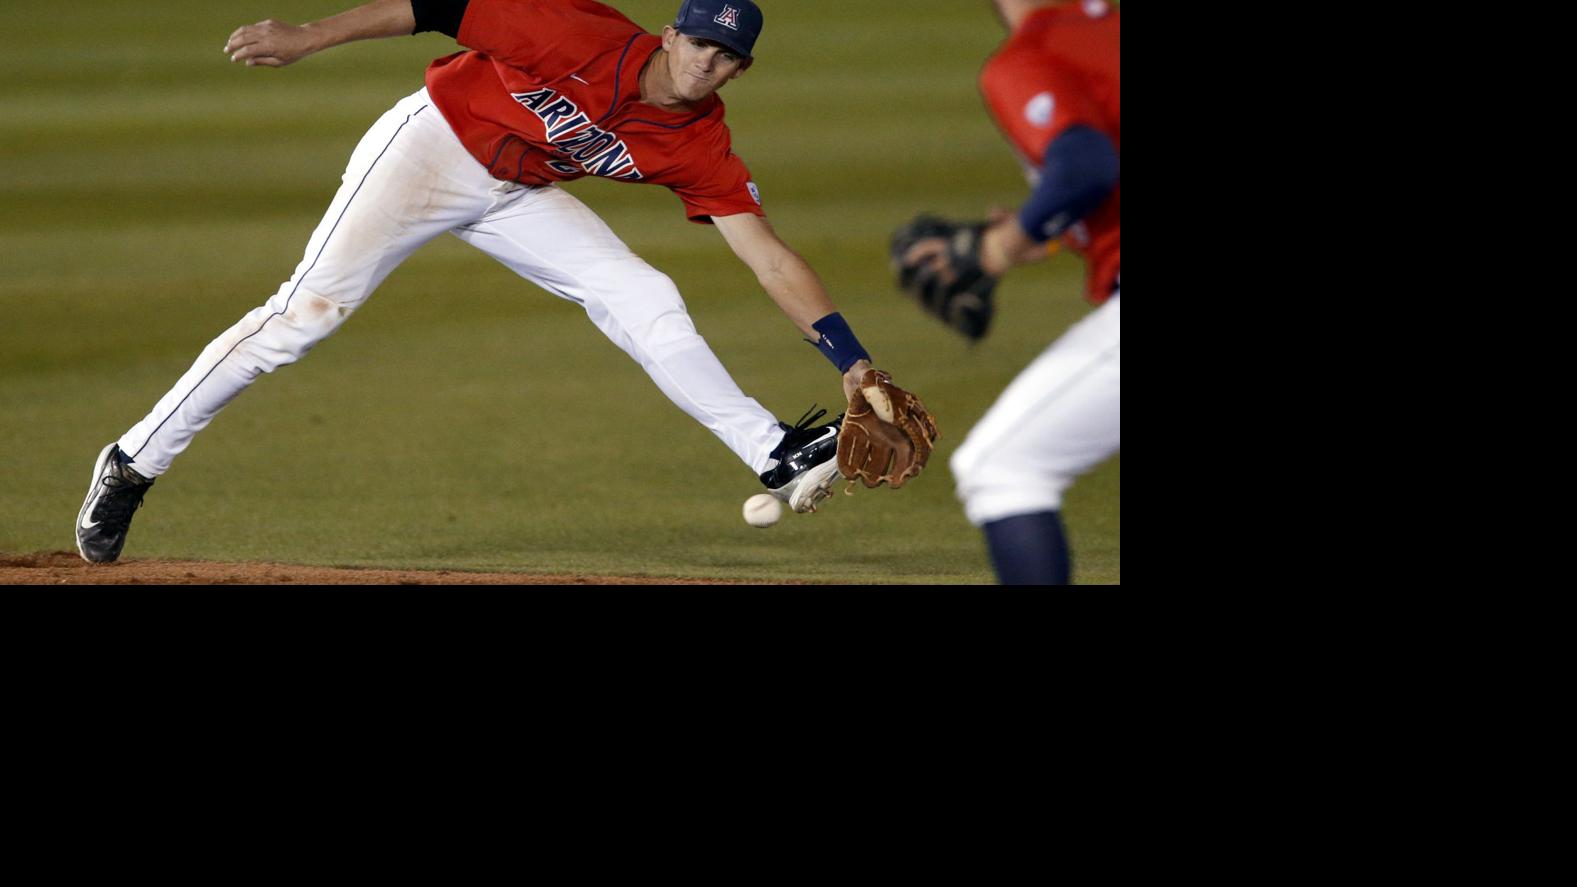 Watch: Ex-Arizona Wildcat Scott Kingery hits first career MLB home